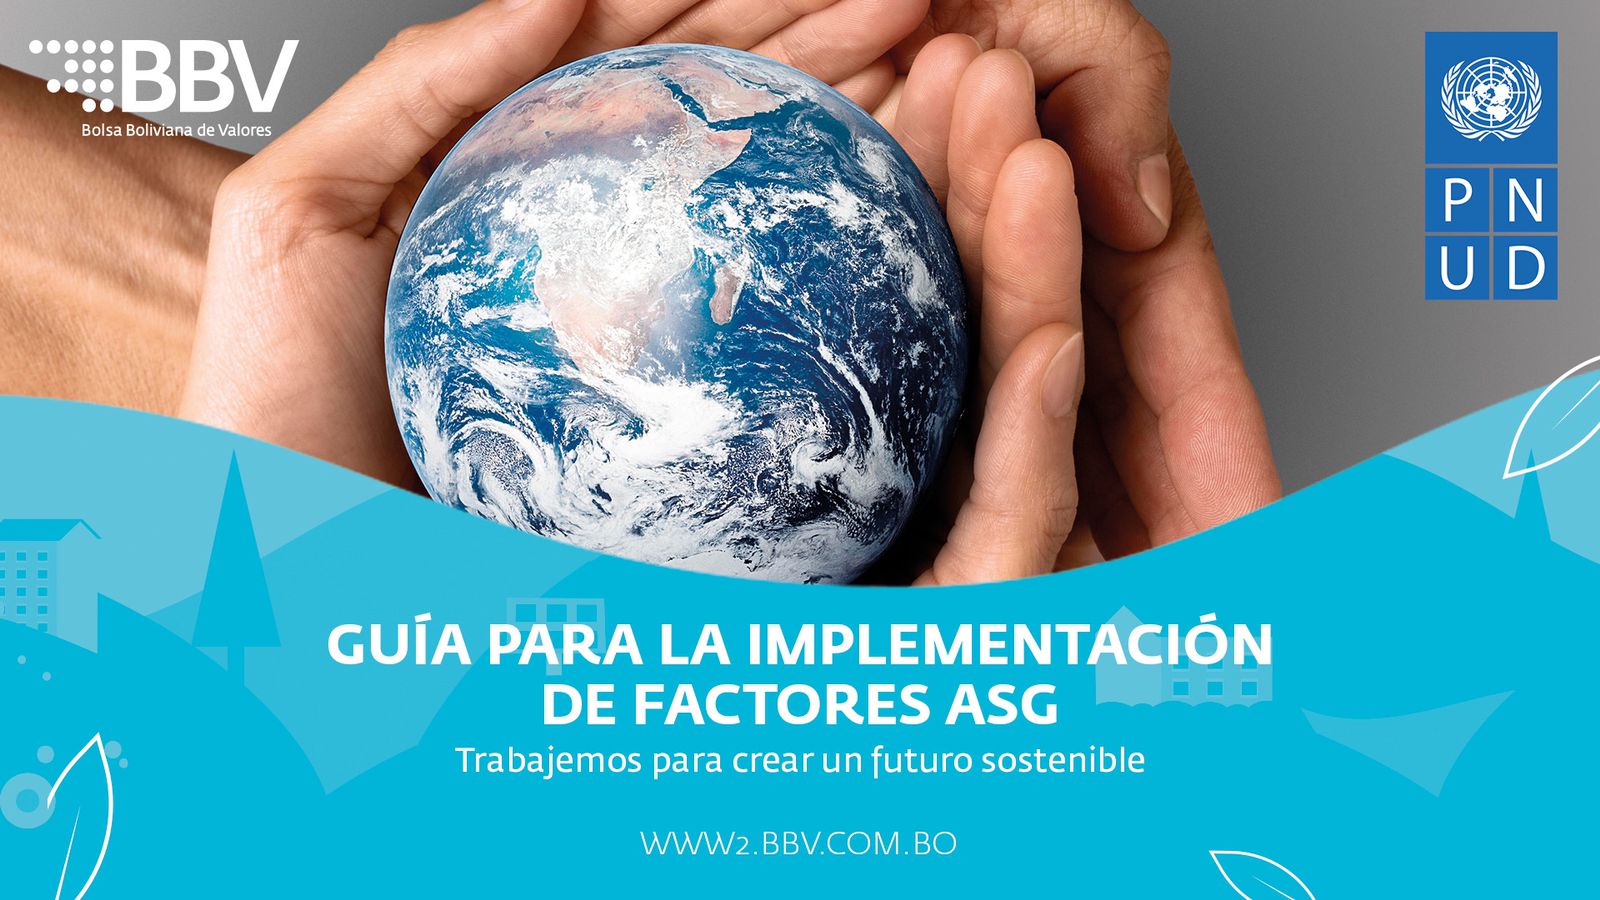 Hacer desarrollo sostenible desde el mercado de valores:  BBV y el PNUD presentan la guía para la implementación de factores ASG